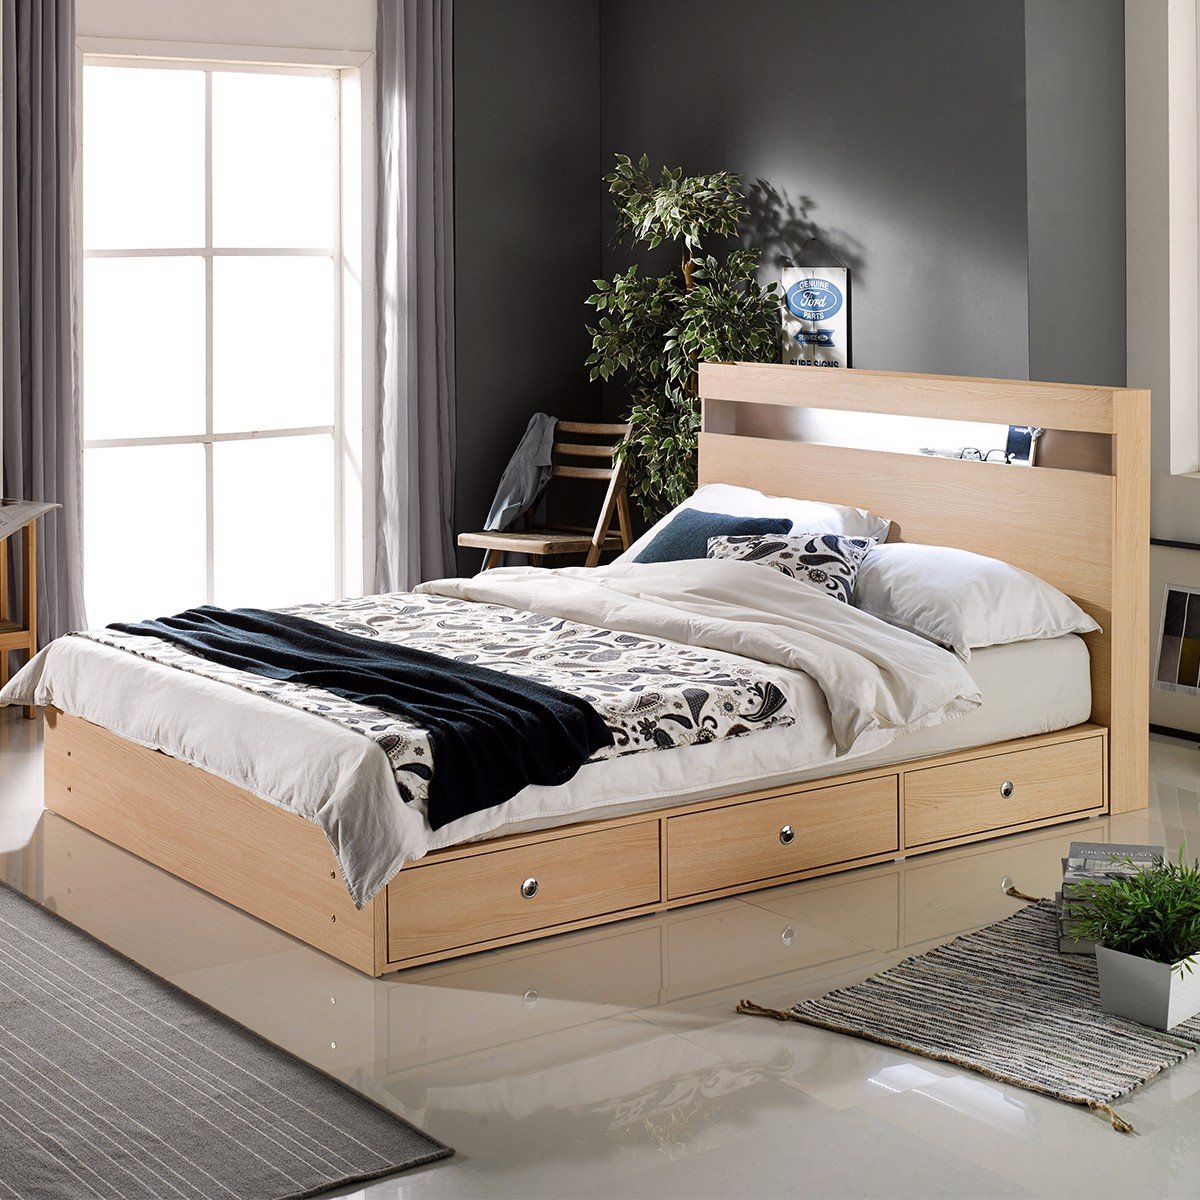 Giường gỗ 1m2 là gì? Xu hướng chọn giường gỗ 1m2